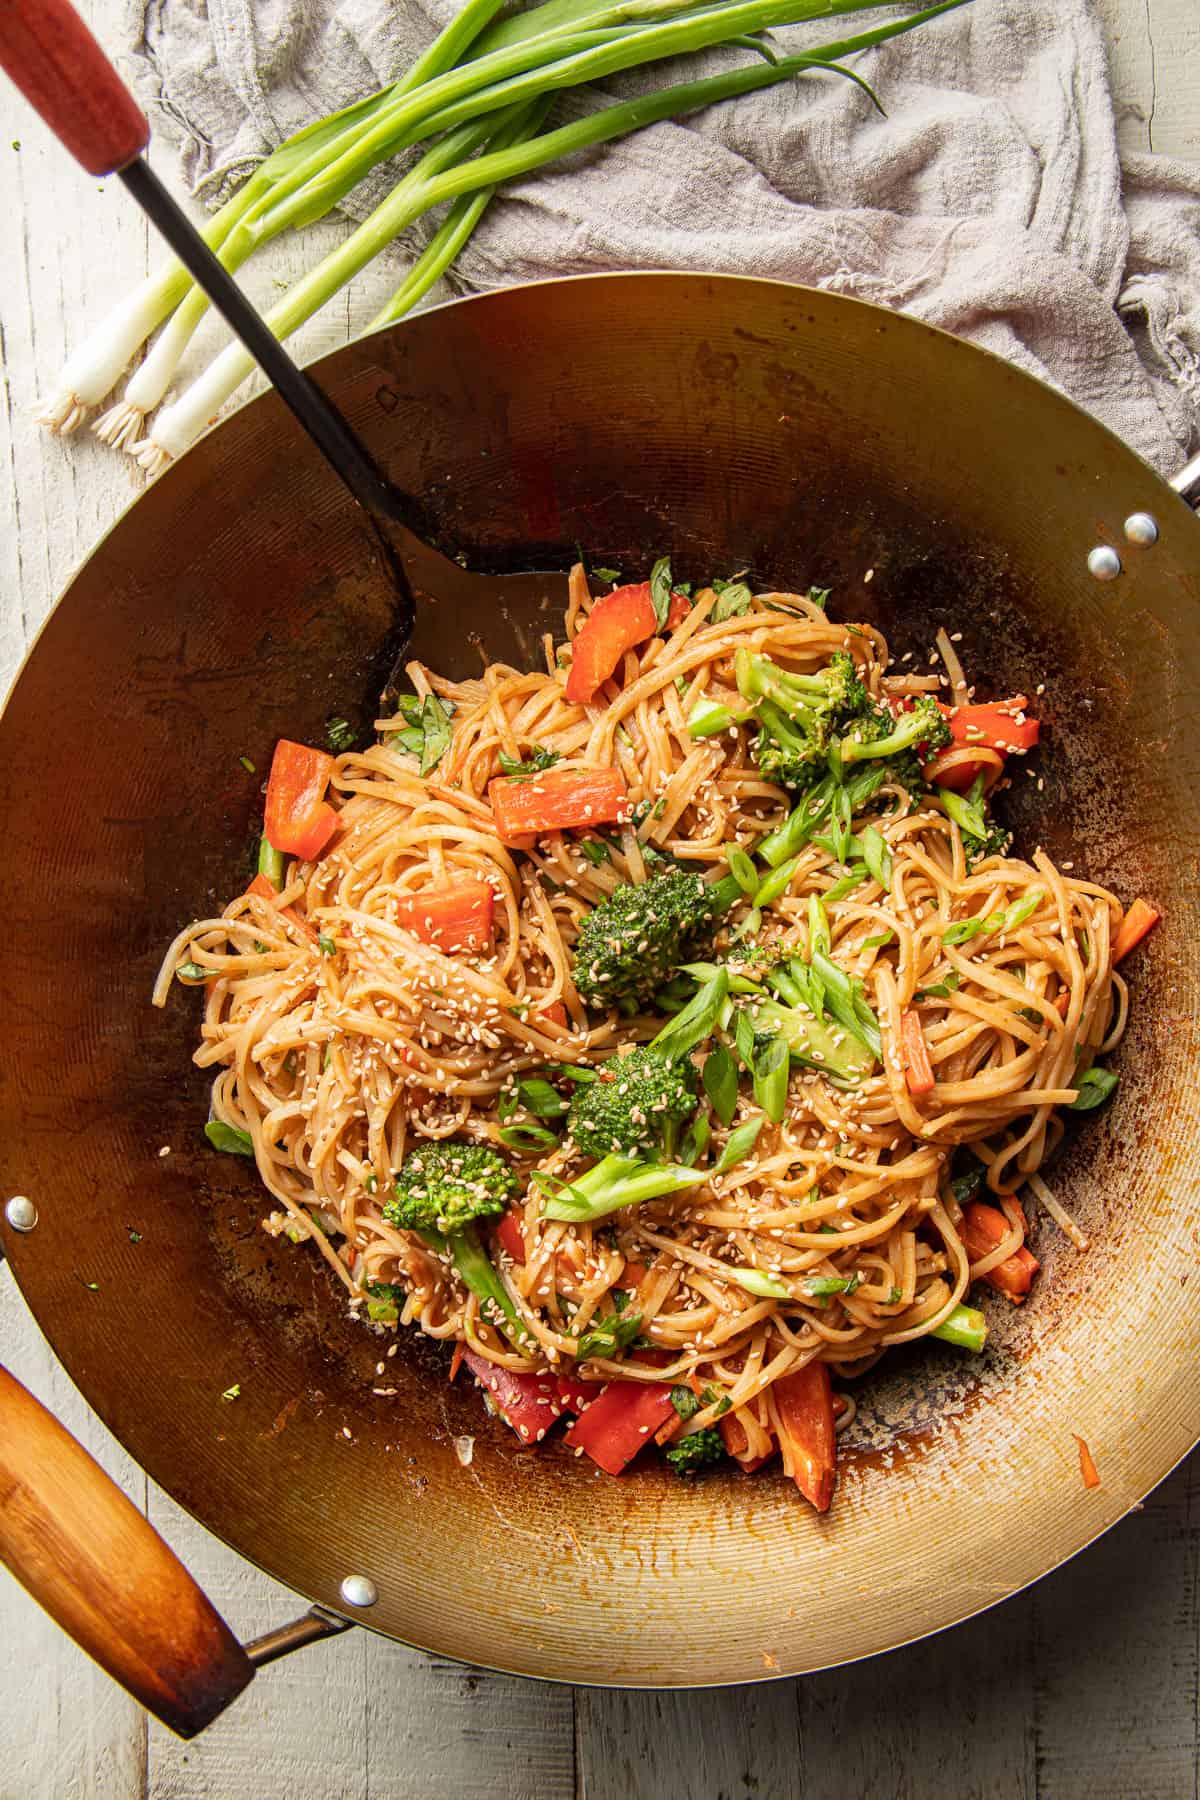 Hoisin Noodles and vegetables in a wok.